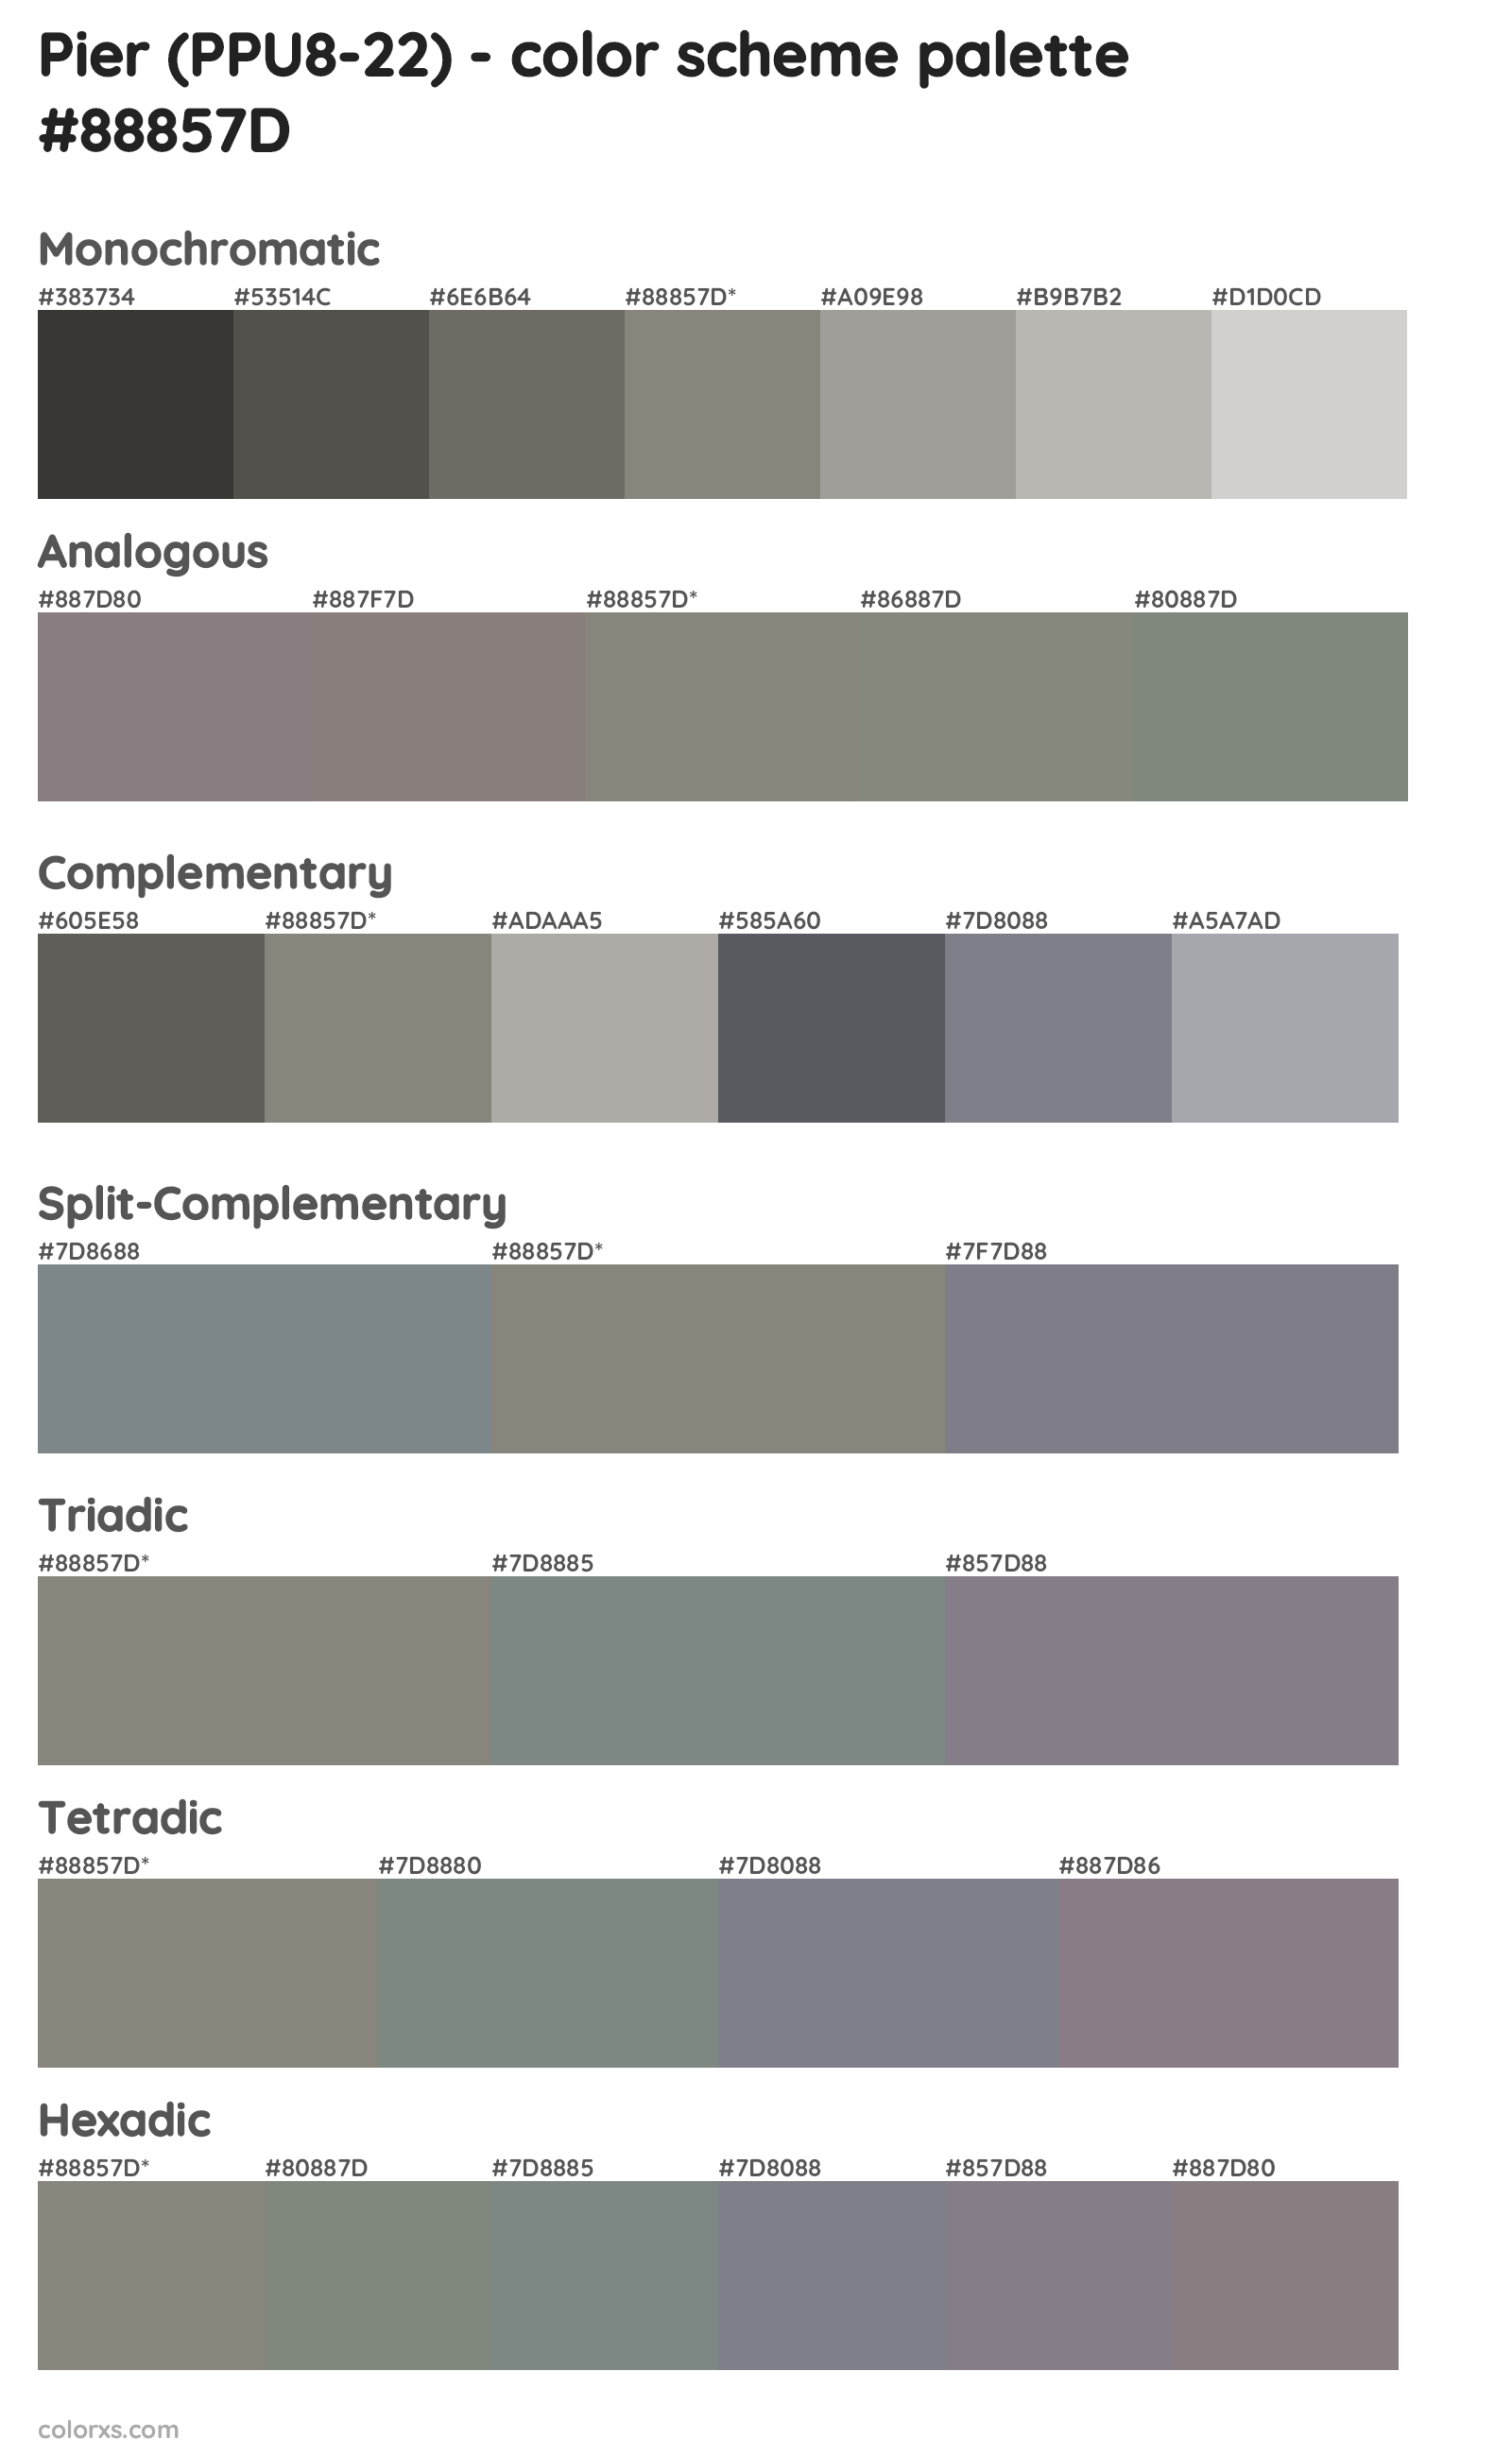 Pier (PPU8-22) Color Scheme Palettes